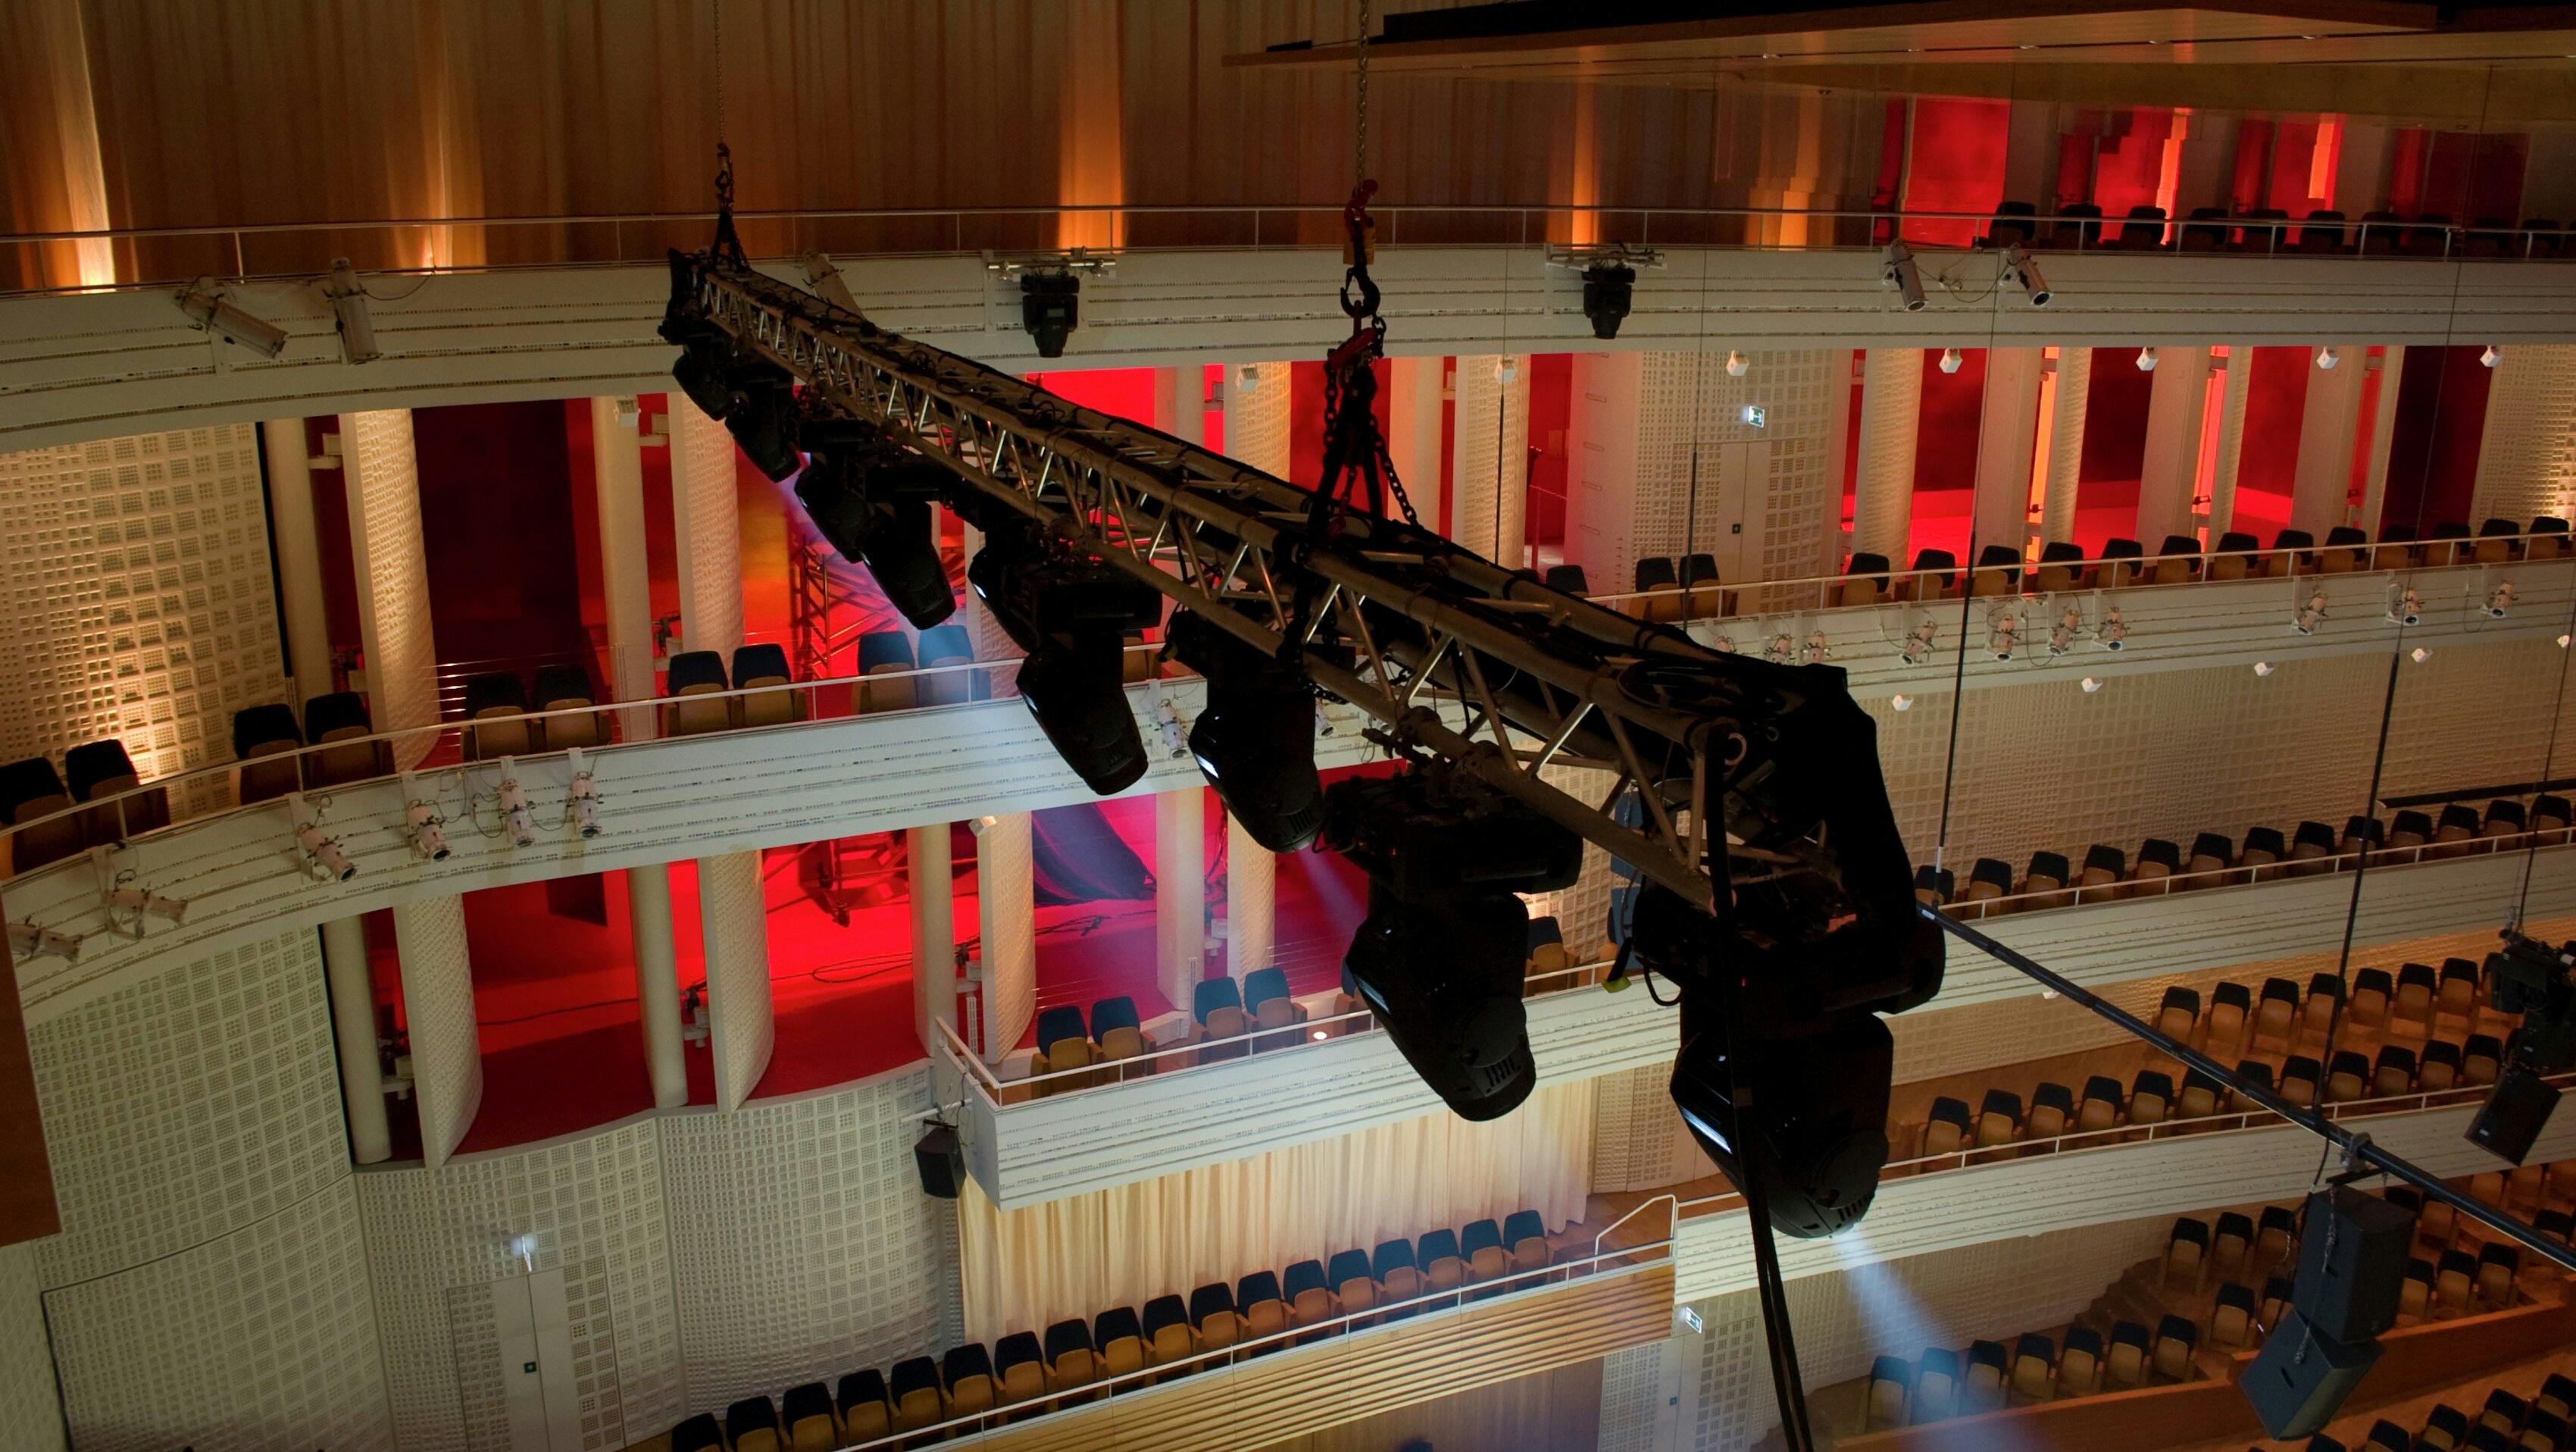 Die Eventtechnik instzeniert schöne Lichtstimmungen im Konzertsaal des KKL Luzern